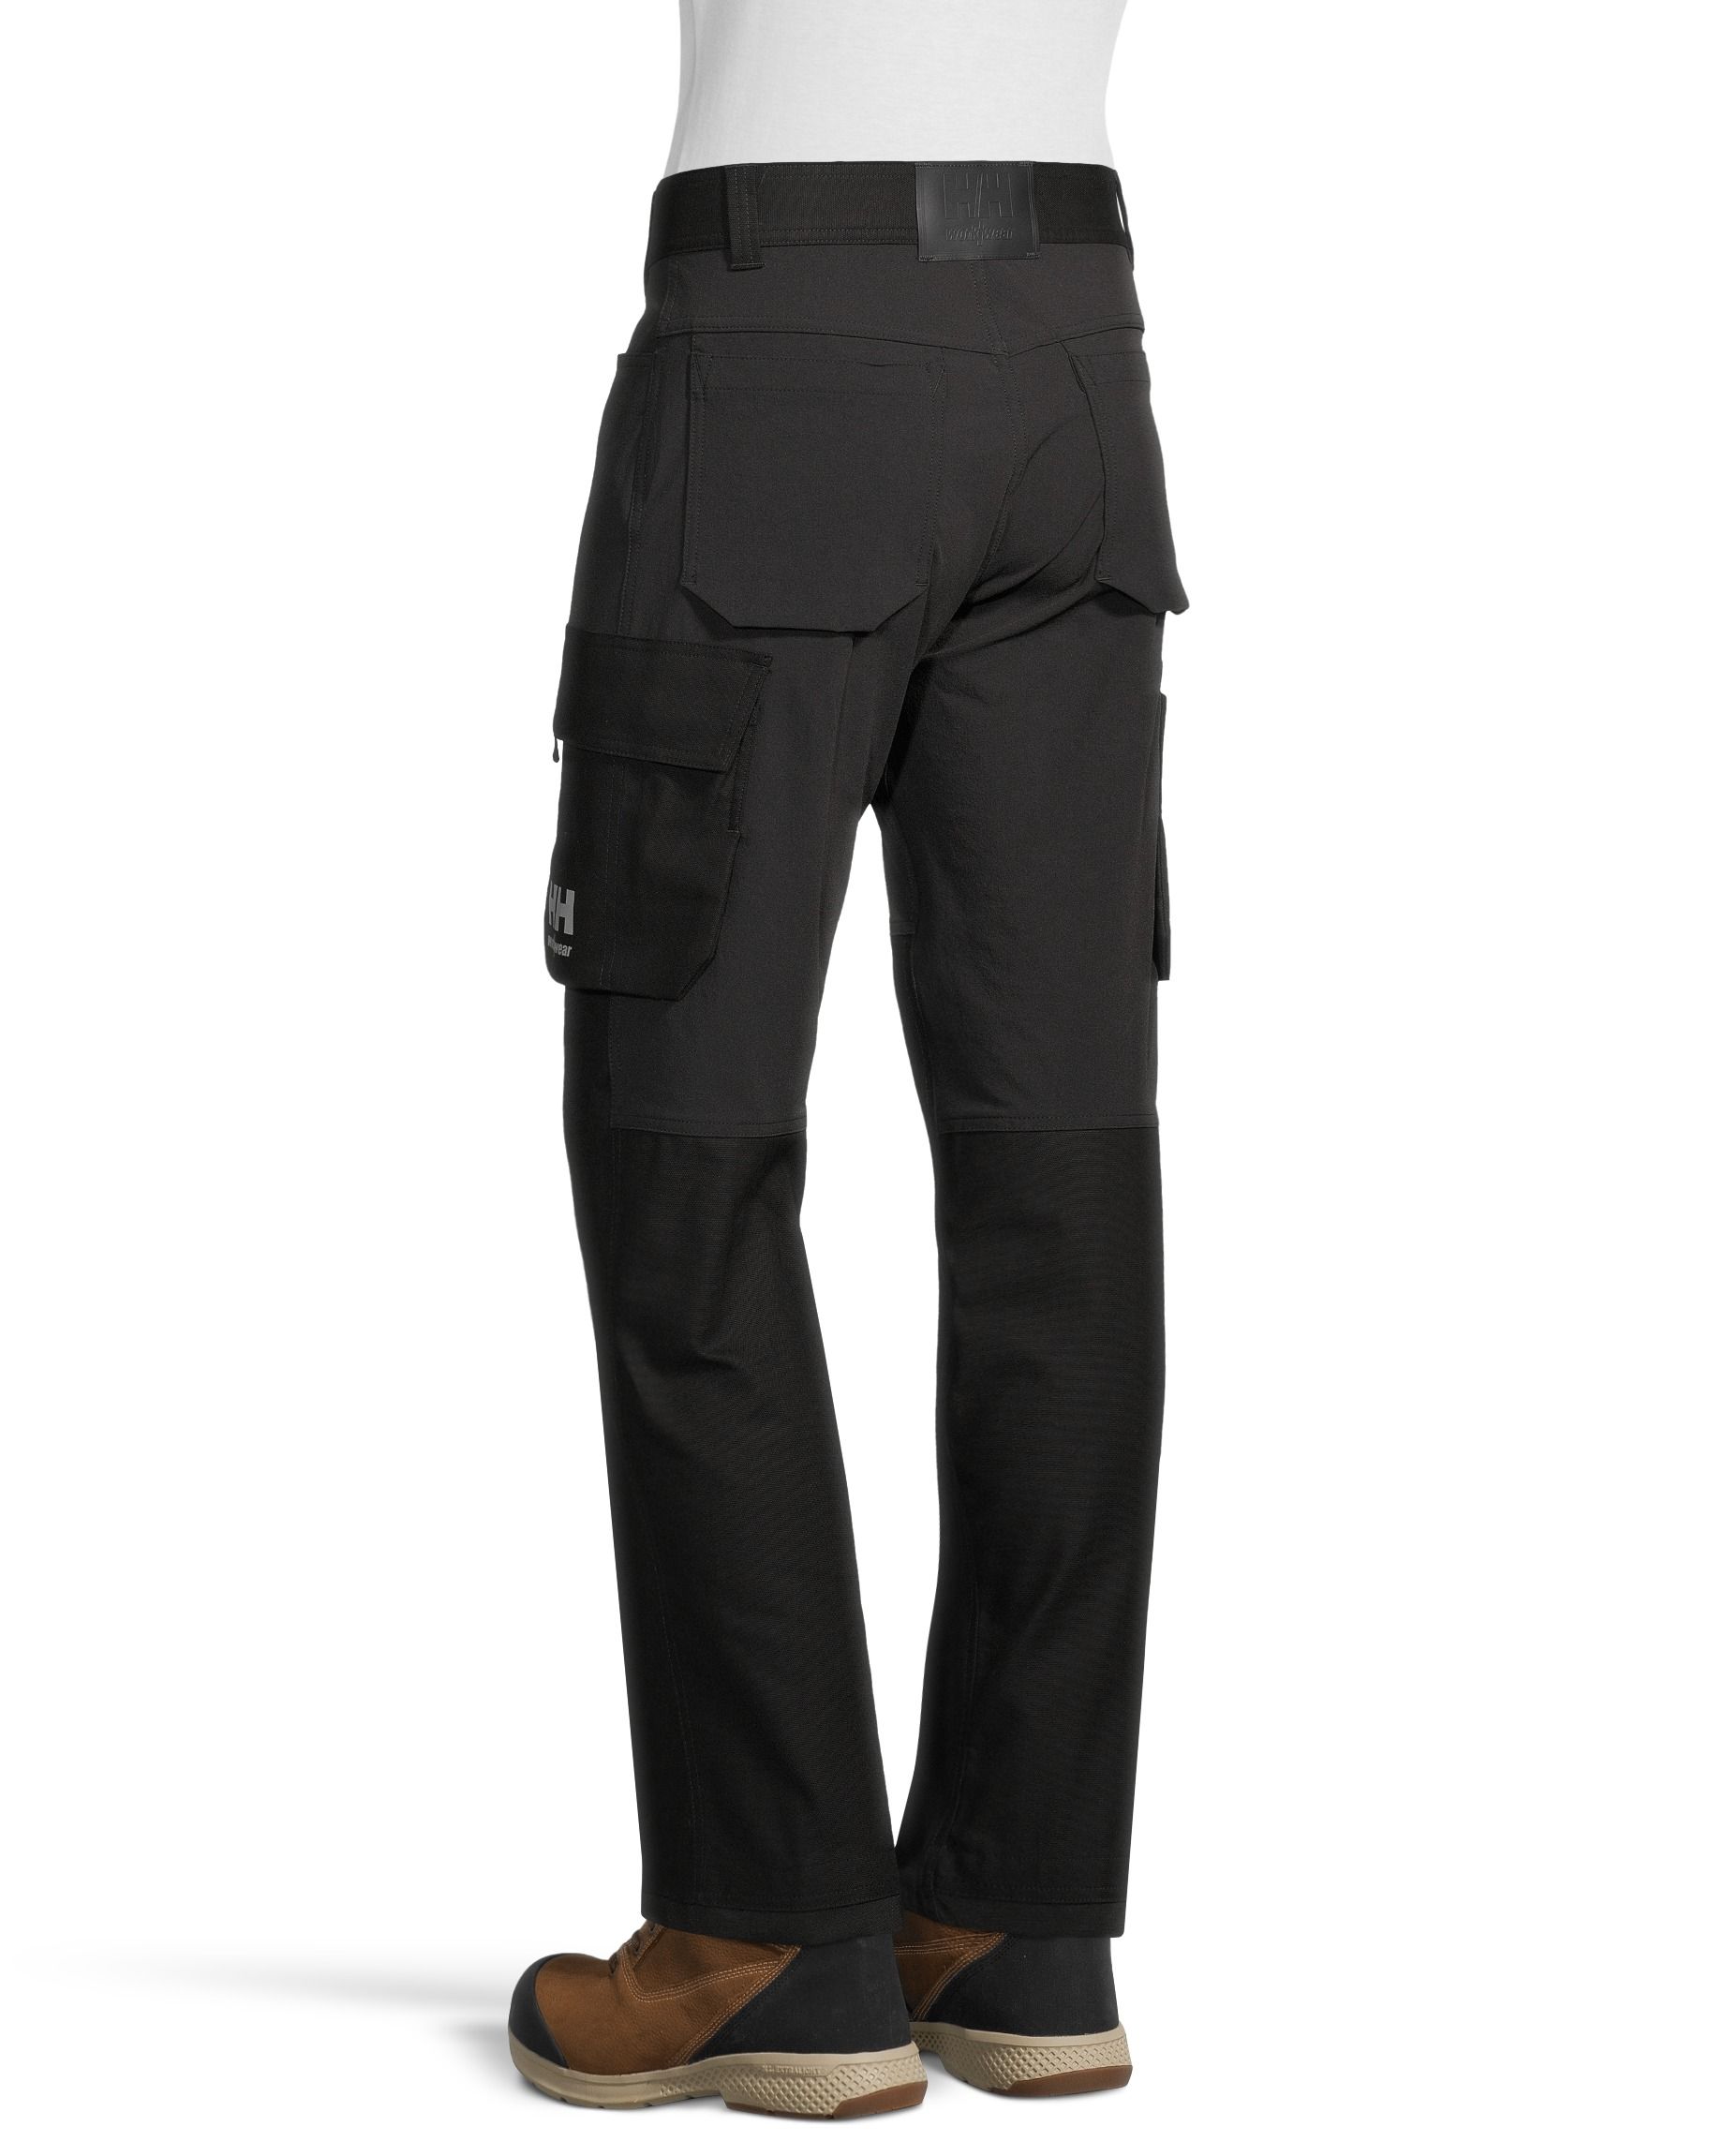 Under Armour Women's Tactical Patrol Pants Black Size 4 